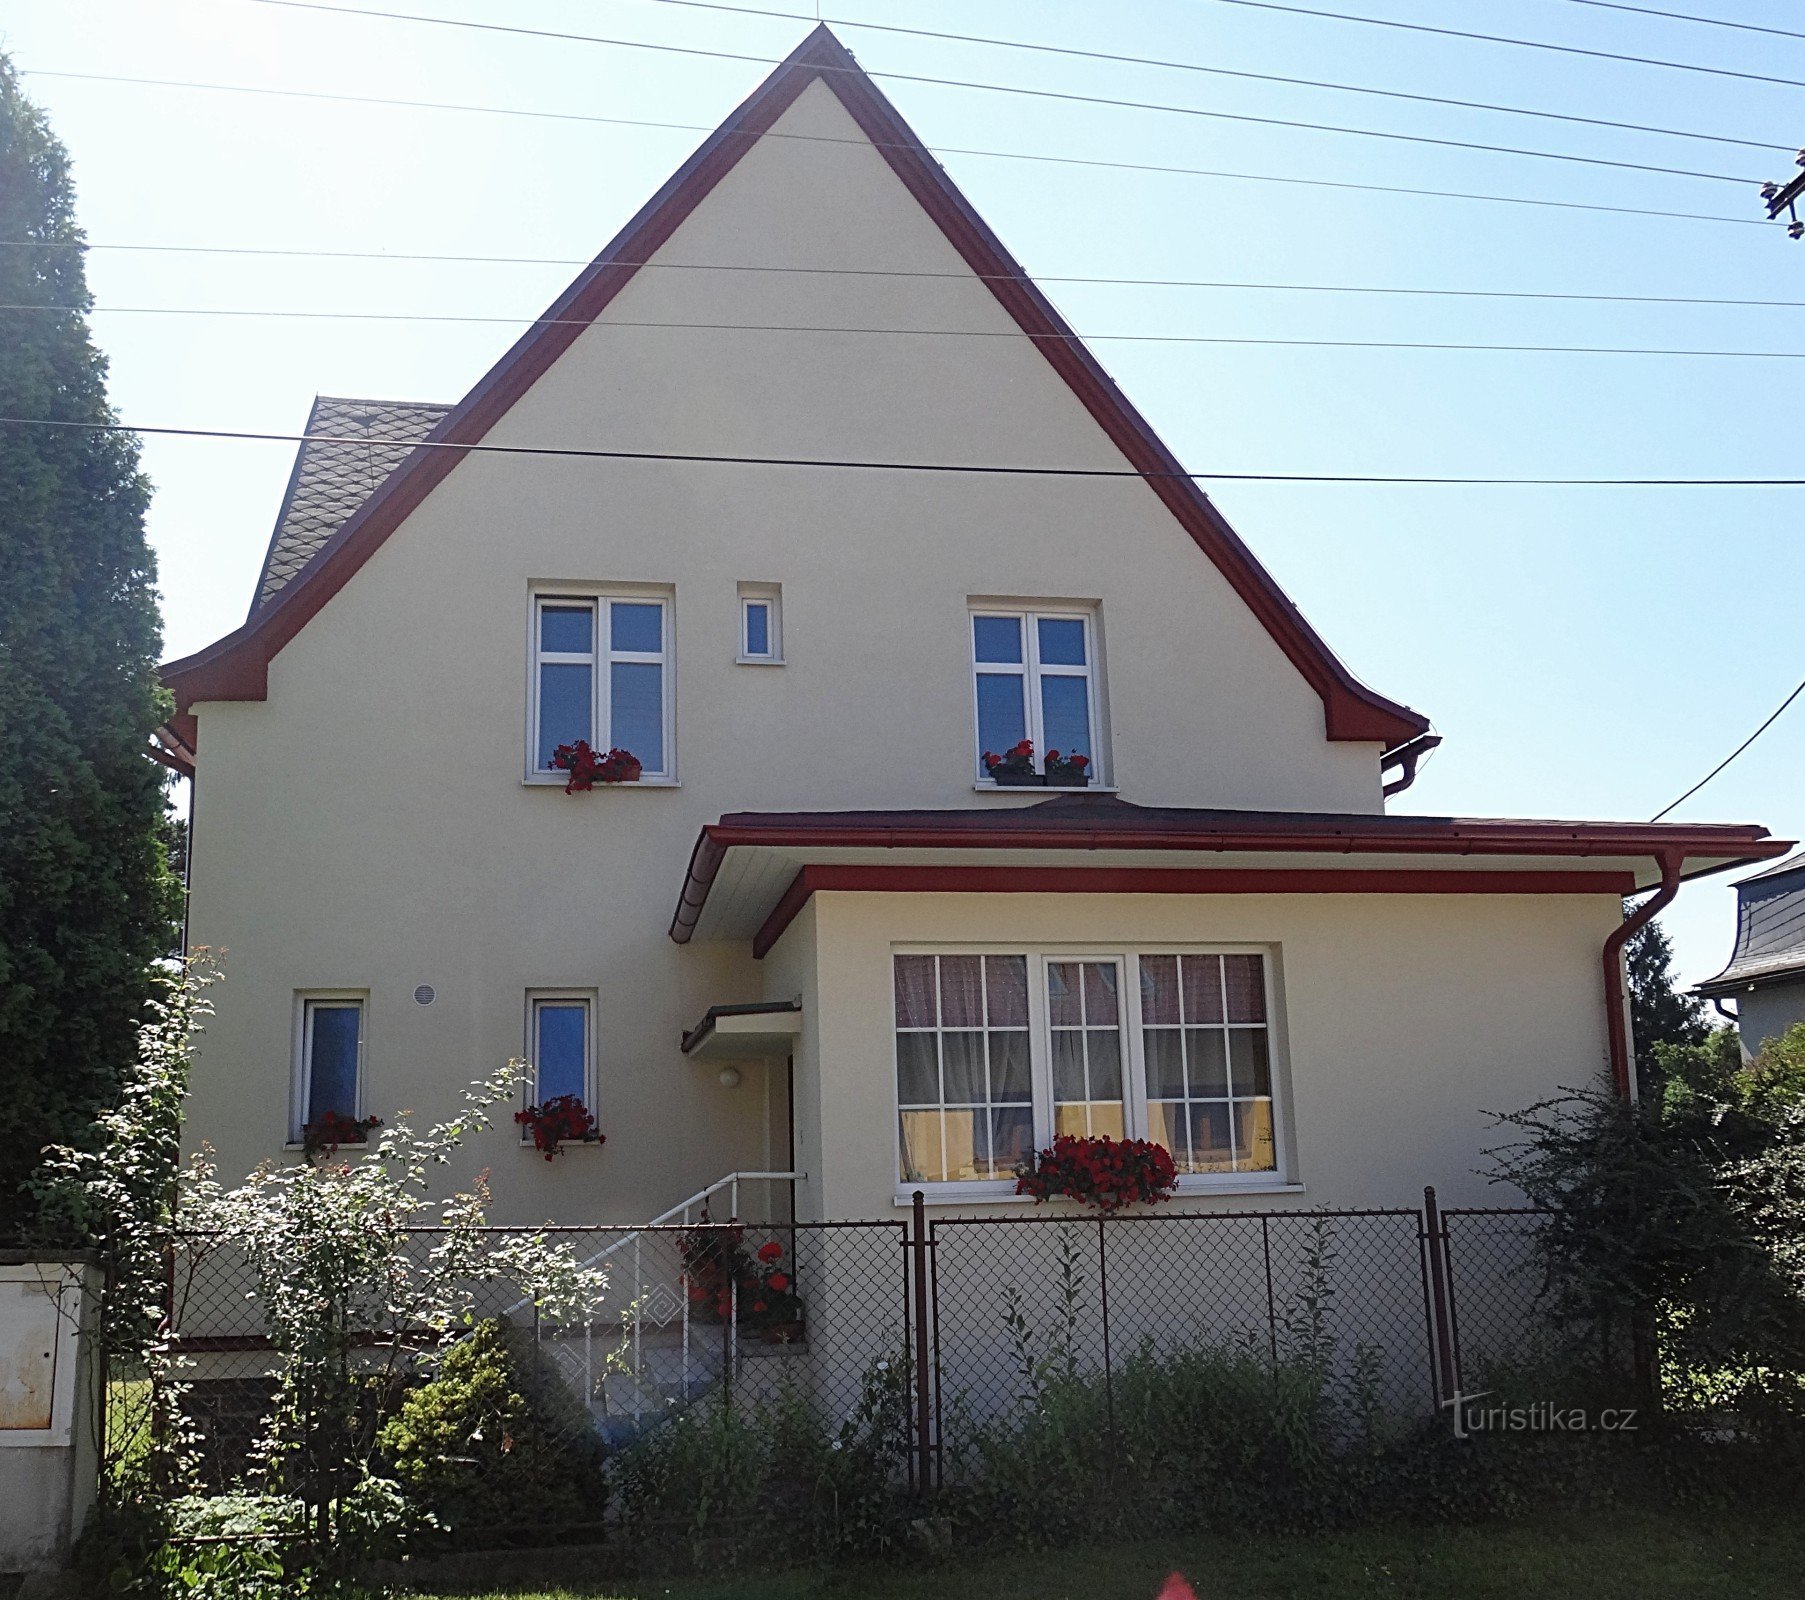 La maison d'hôtes du professeur Vavrečka aujourd'hui